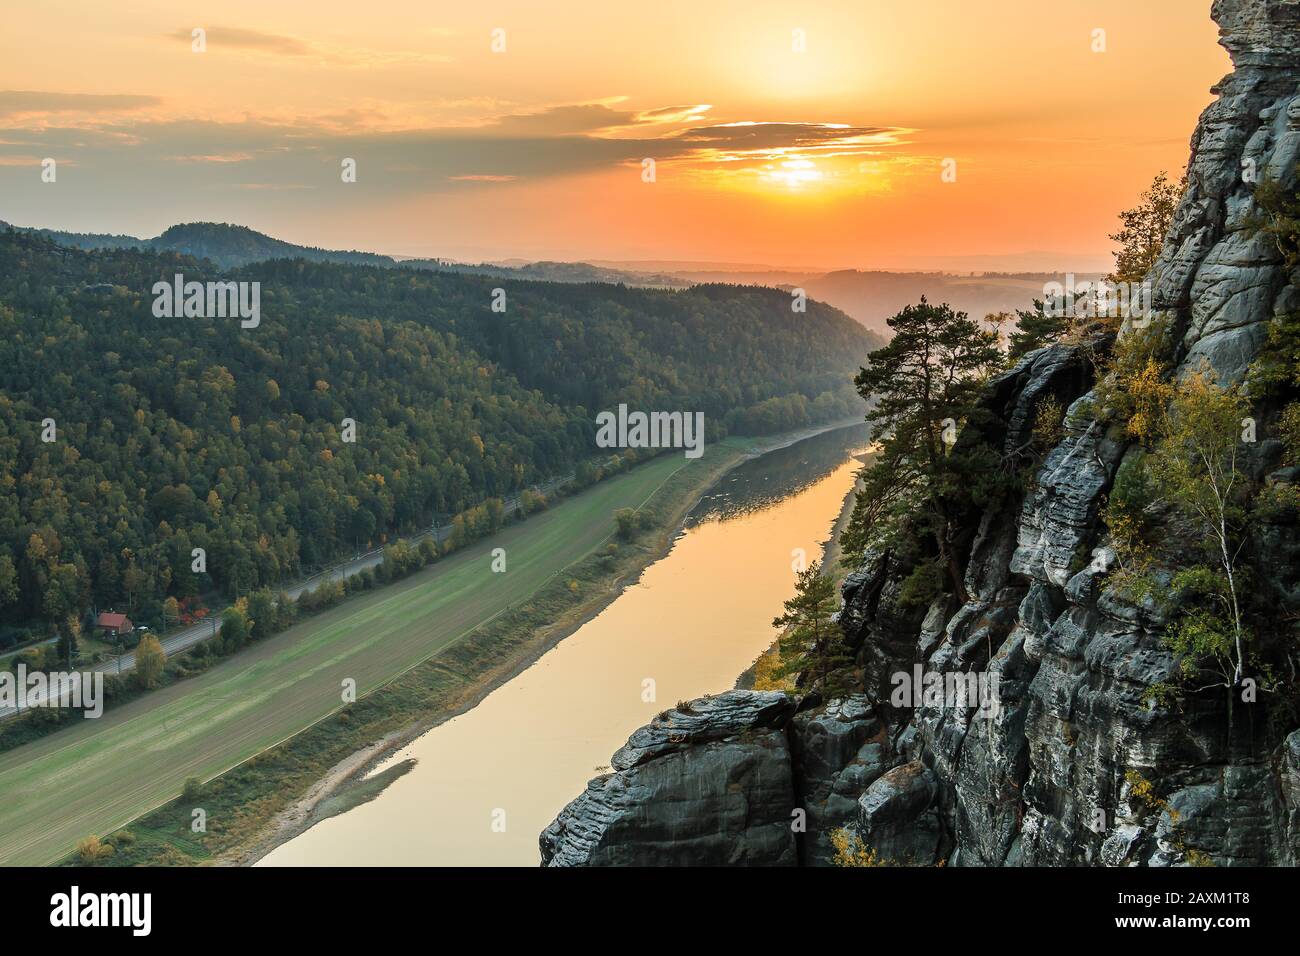 Blick auf das Elbtal im Nationalpark Sächsische Schweiz. Elbe bei Sonnenuntergang. Farbenfroher Himmel mit gelb-roter Sonne. Landschaft mit Felsen, Bäumen Stockfoto